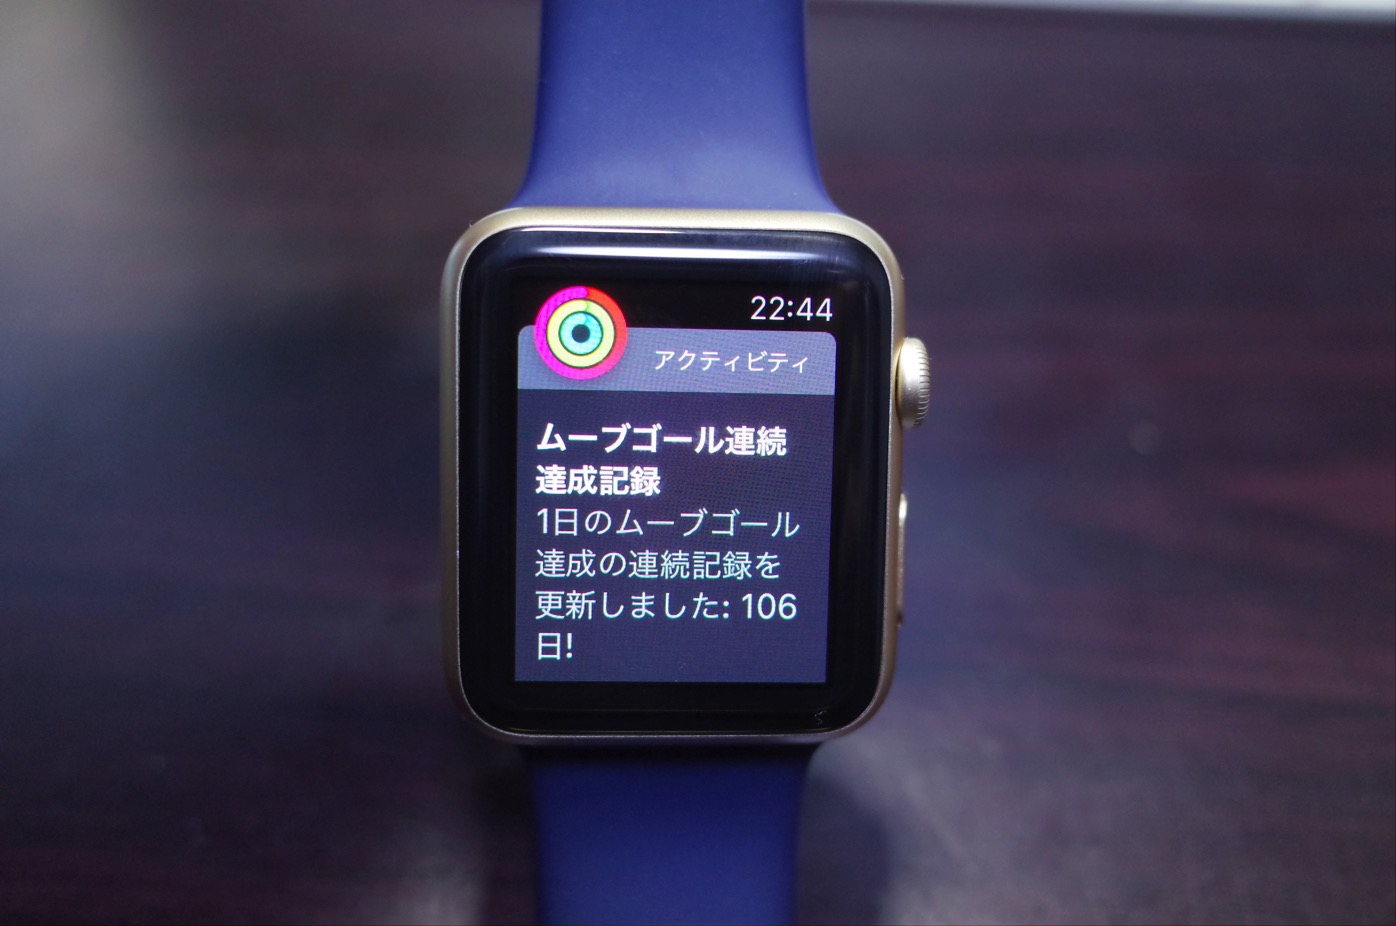 [Apple]100%失敗しないApple Watchスクリーンショットの取り方をシェアするよ